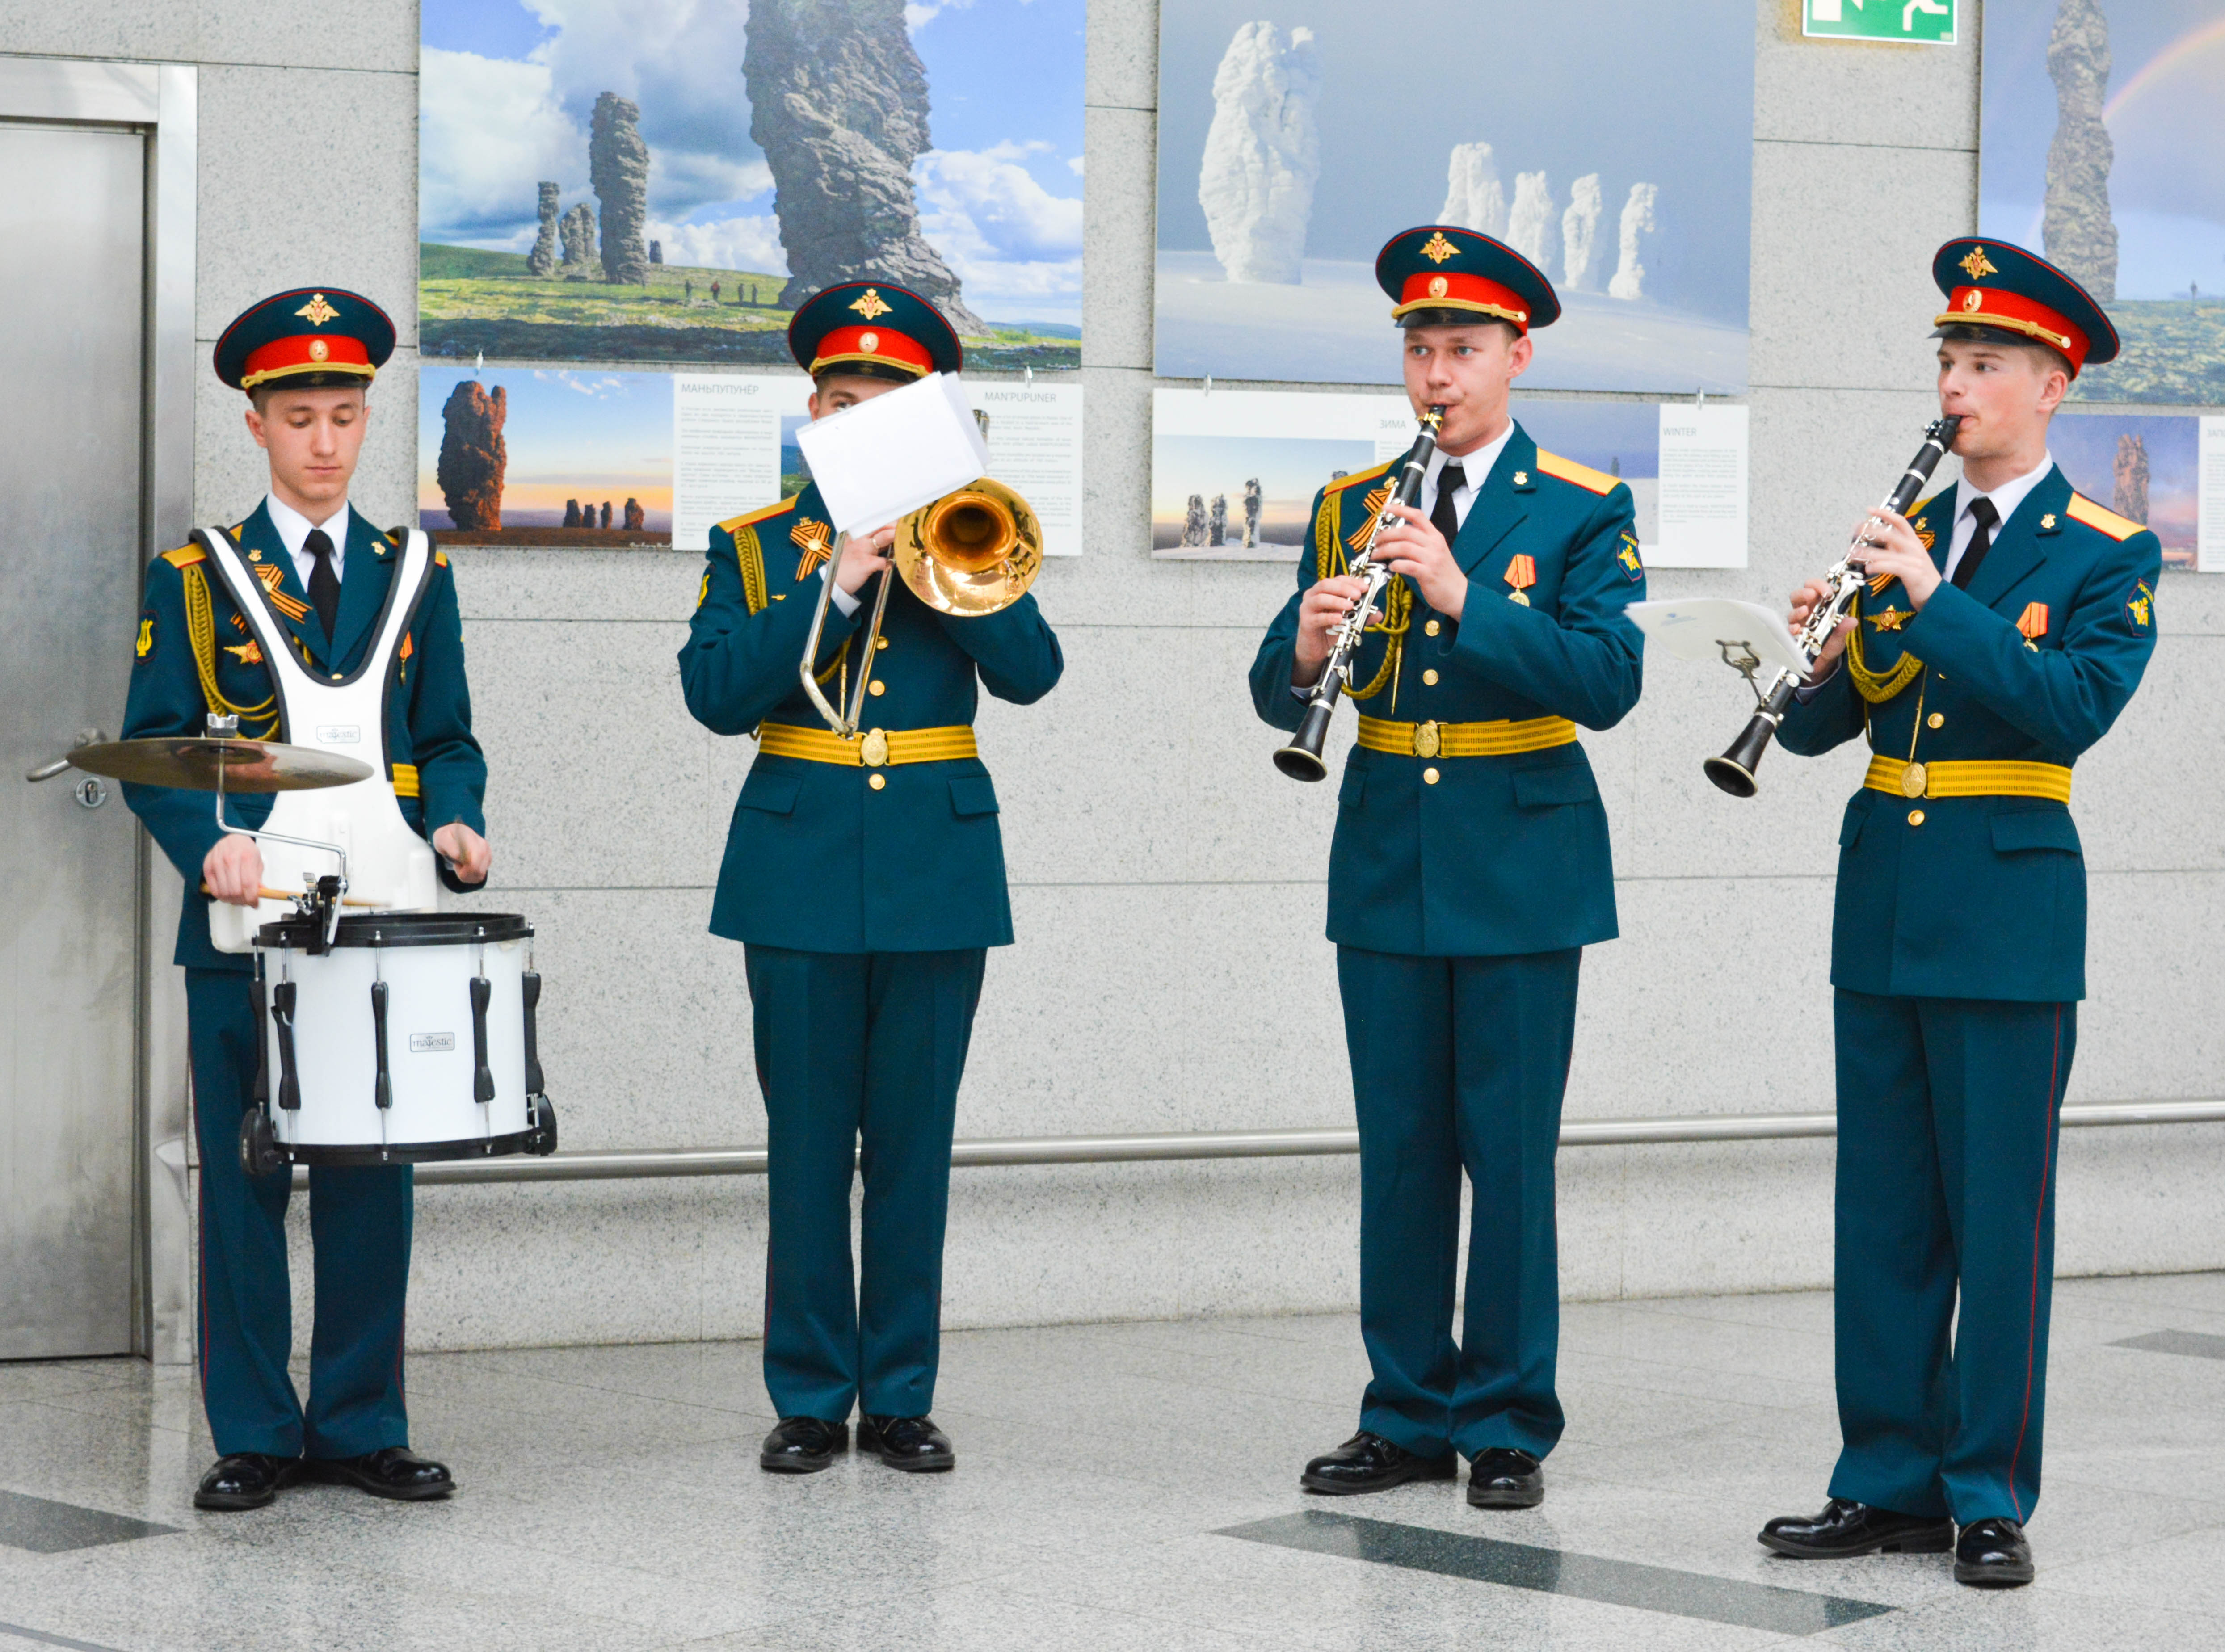 В аэропорту Внуково открылась фотовыставка «Армия России» | Международный аэропорт Внуково